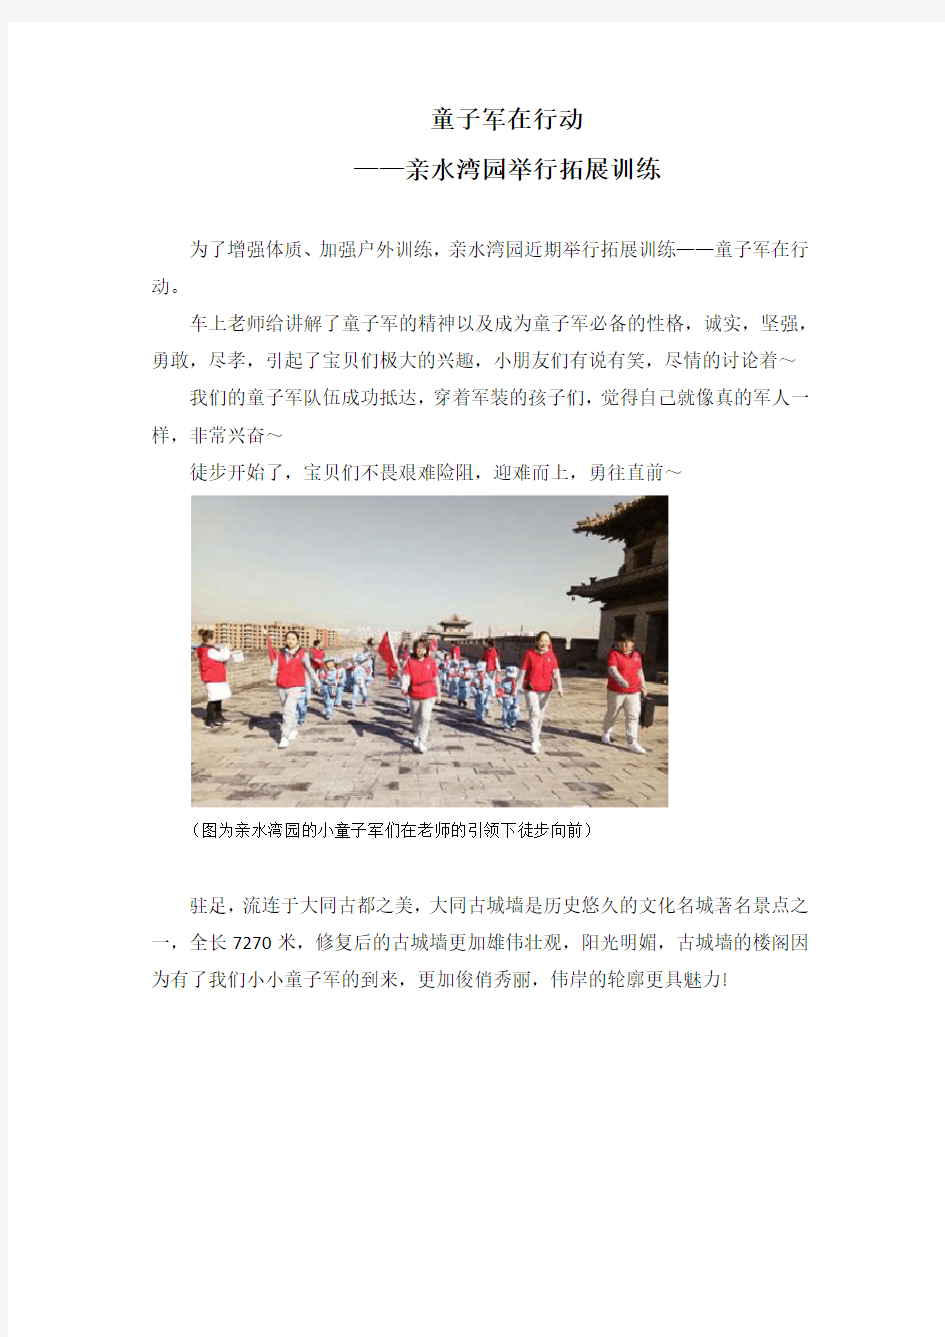 3 京学教育：童子军在行动-亲水湾园举行拓展训练